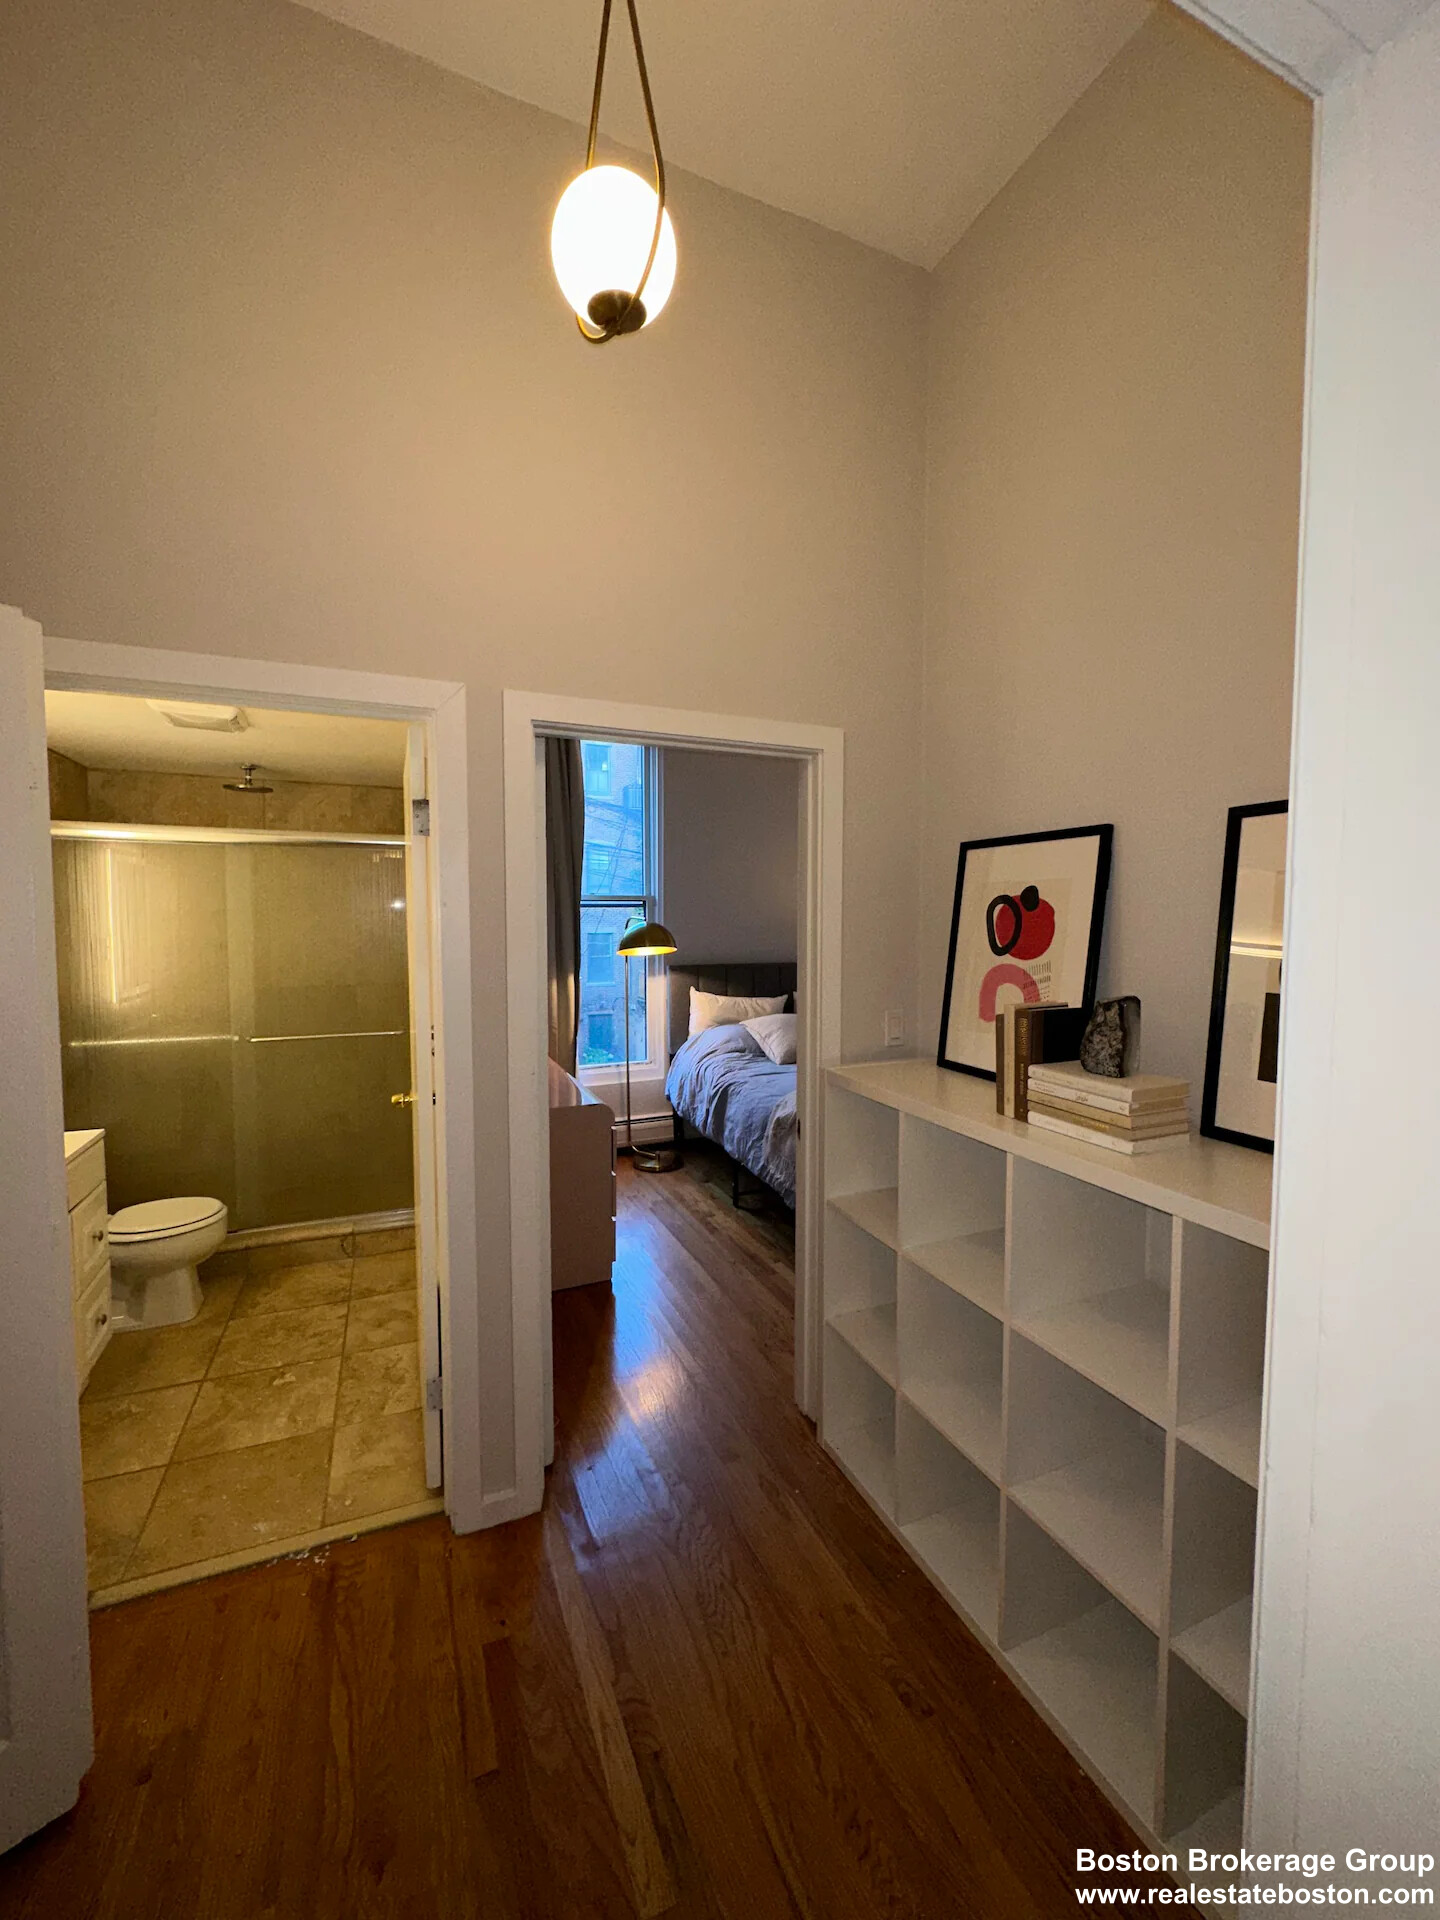 Photos of apartment on Massachusetts,Boston MA 02118